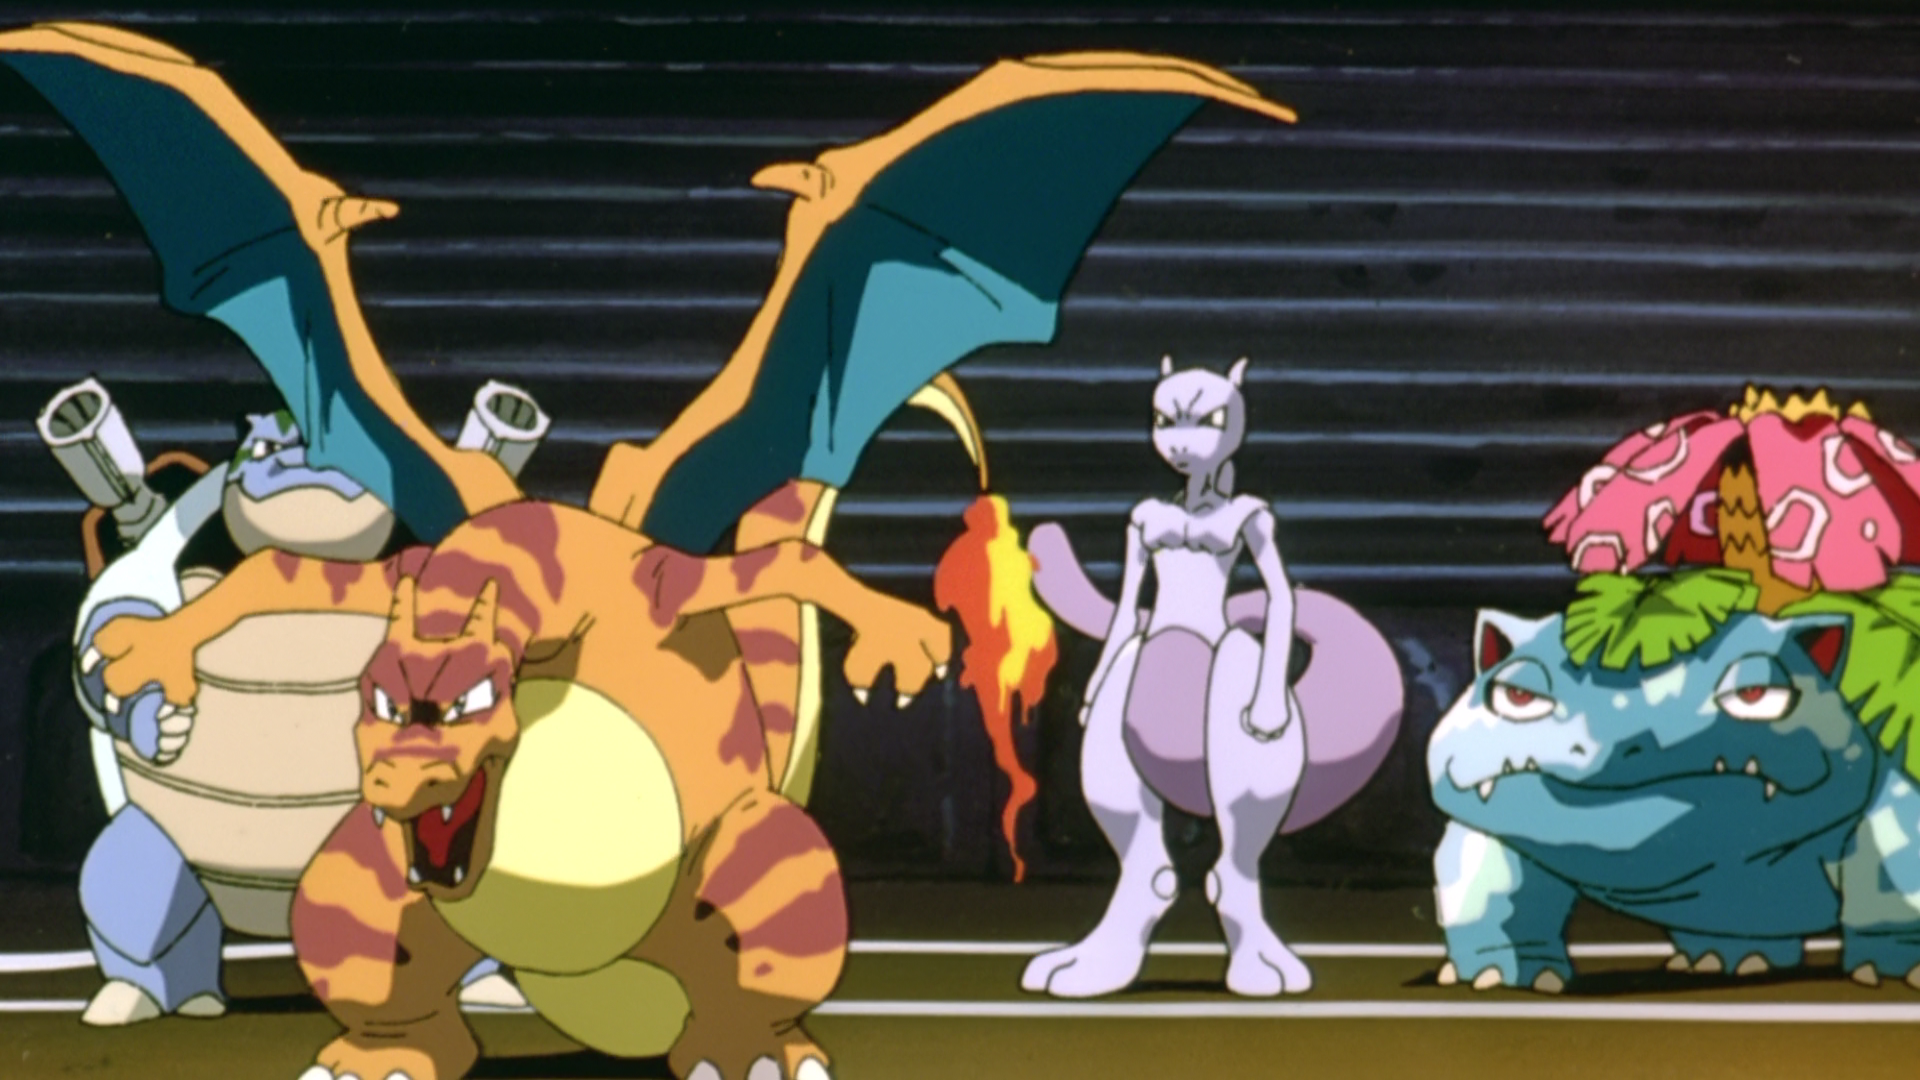 Pokémon O Filme: Mewtwo Contra-Ataca no site oficial > [PLG]